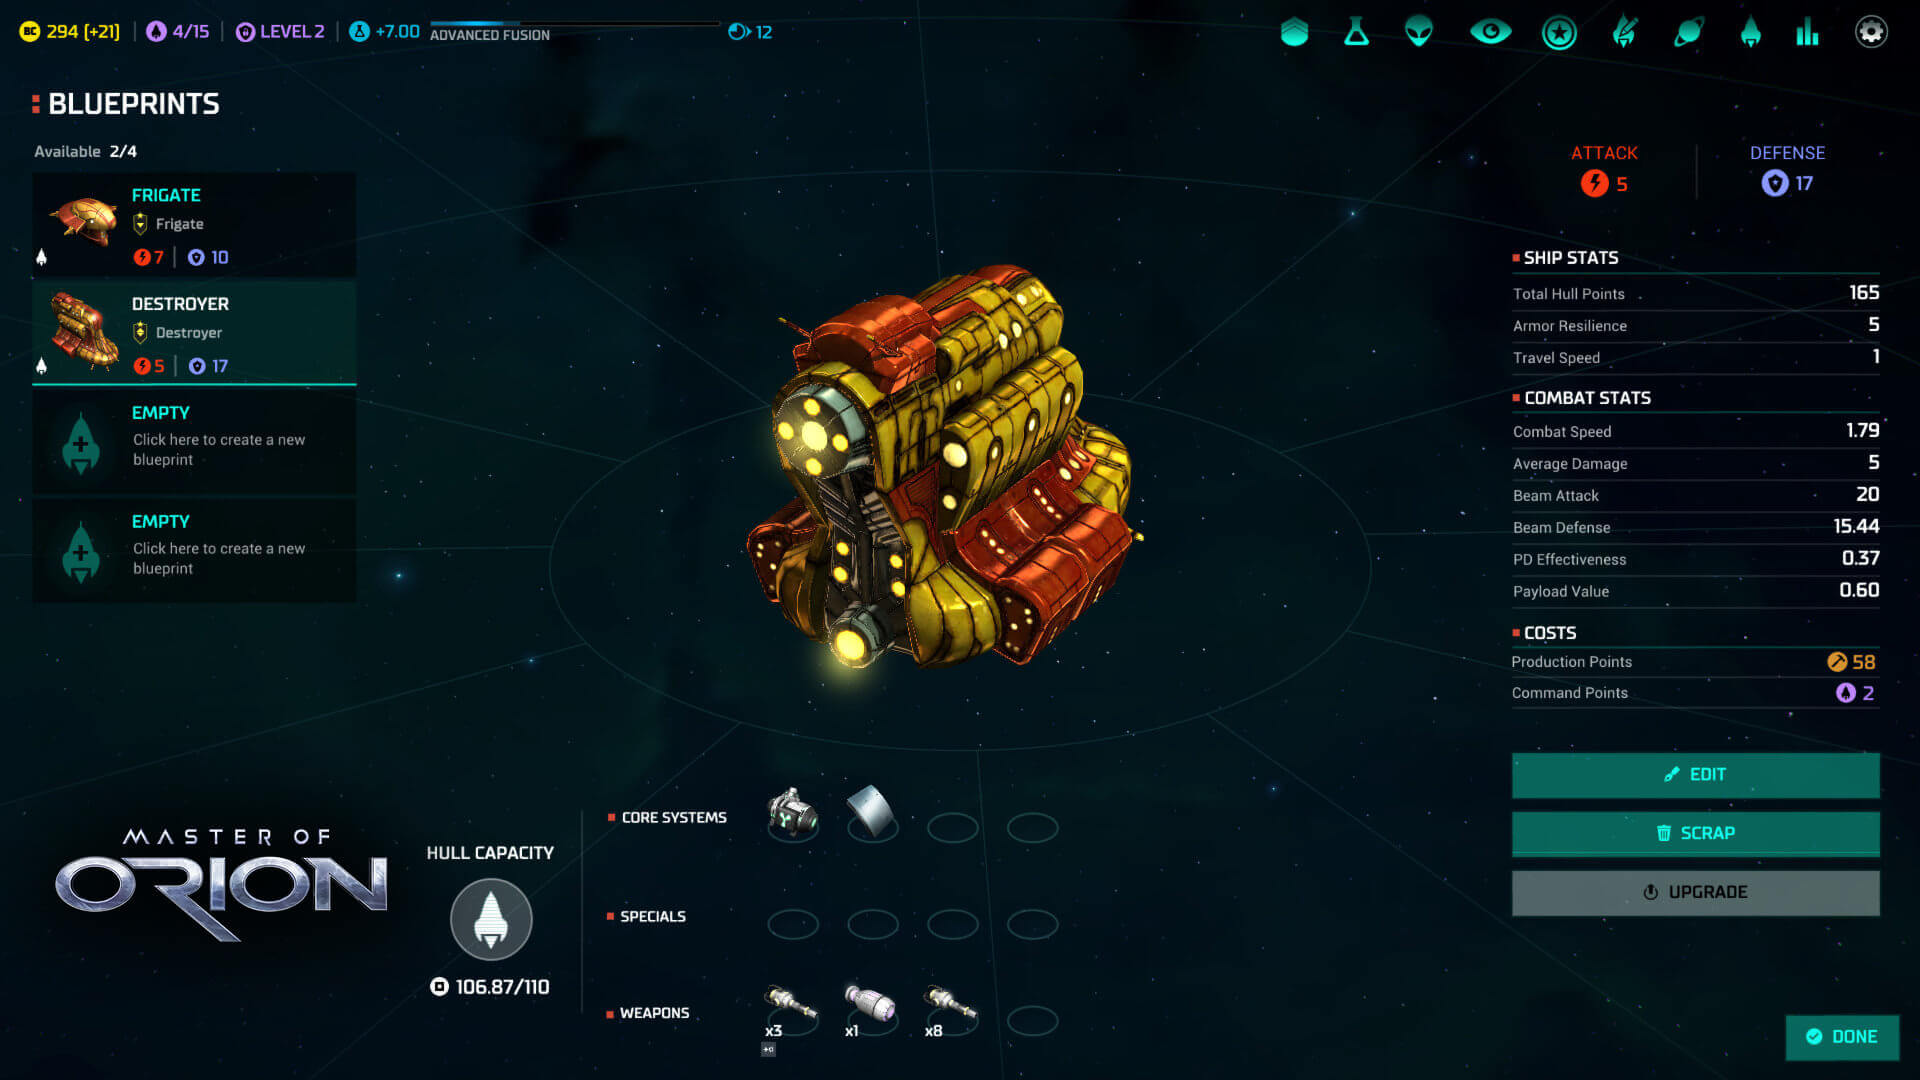 Master of Orion - jogo de estratégia espacial baseada em turnos para PC  publicado pela Wargaming.net